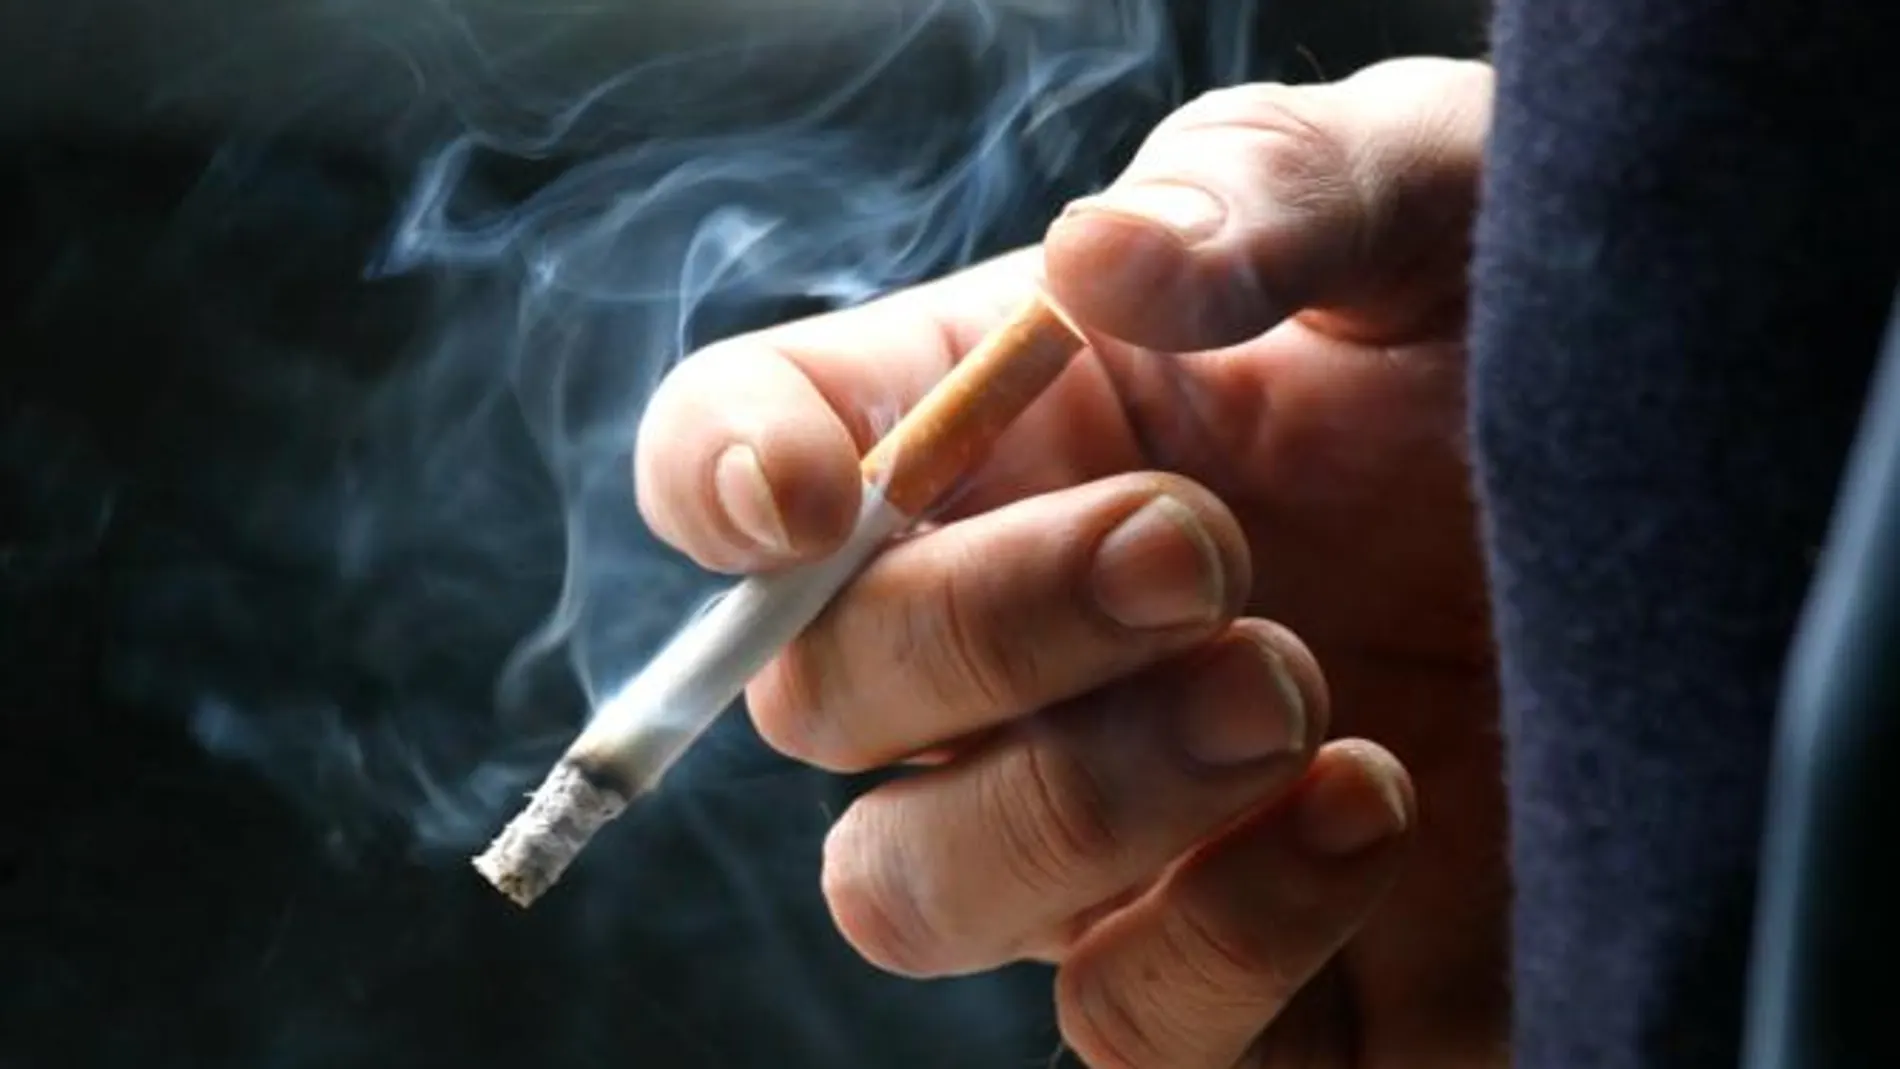 El tabaco es la principal causa del cáncer de pulmón